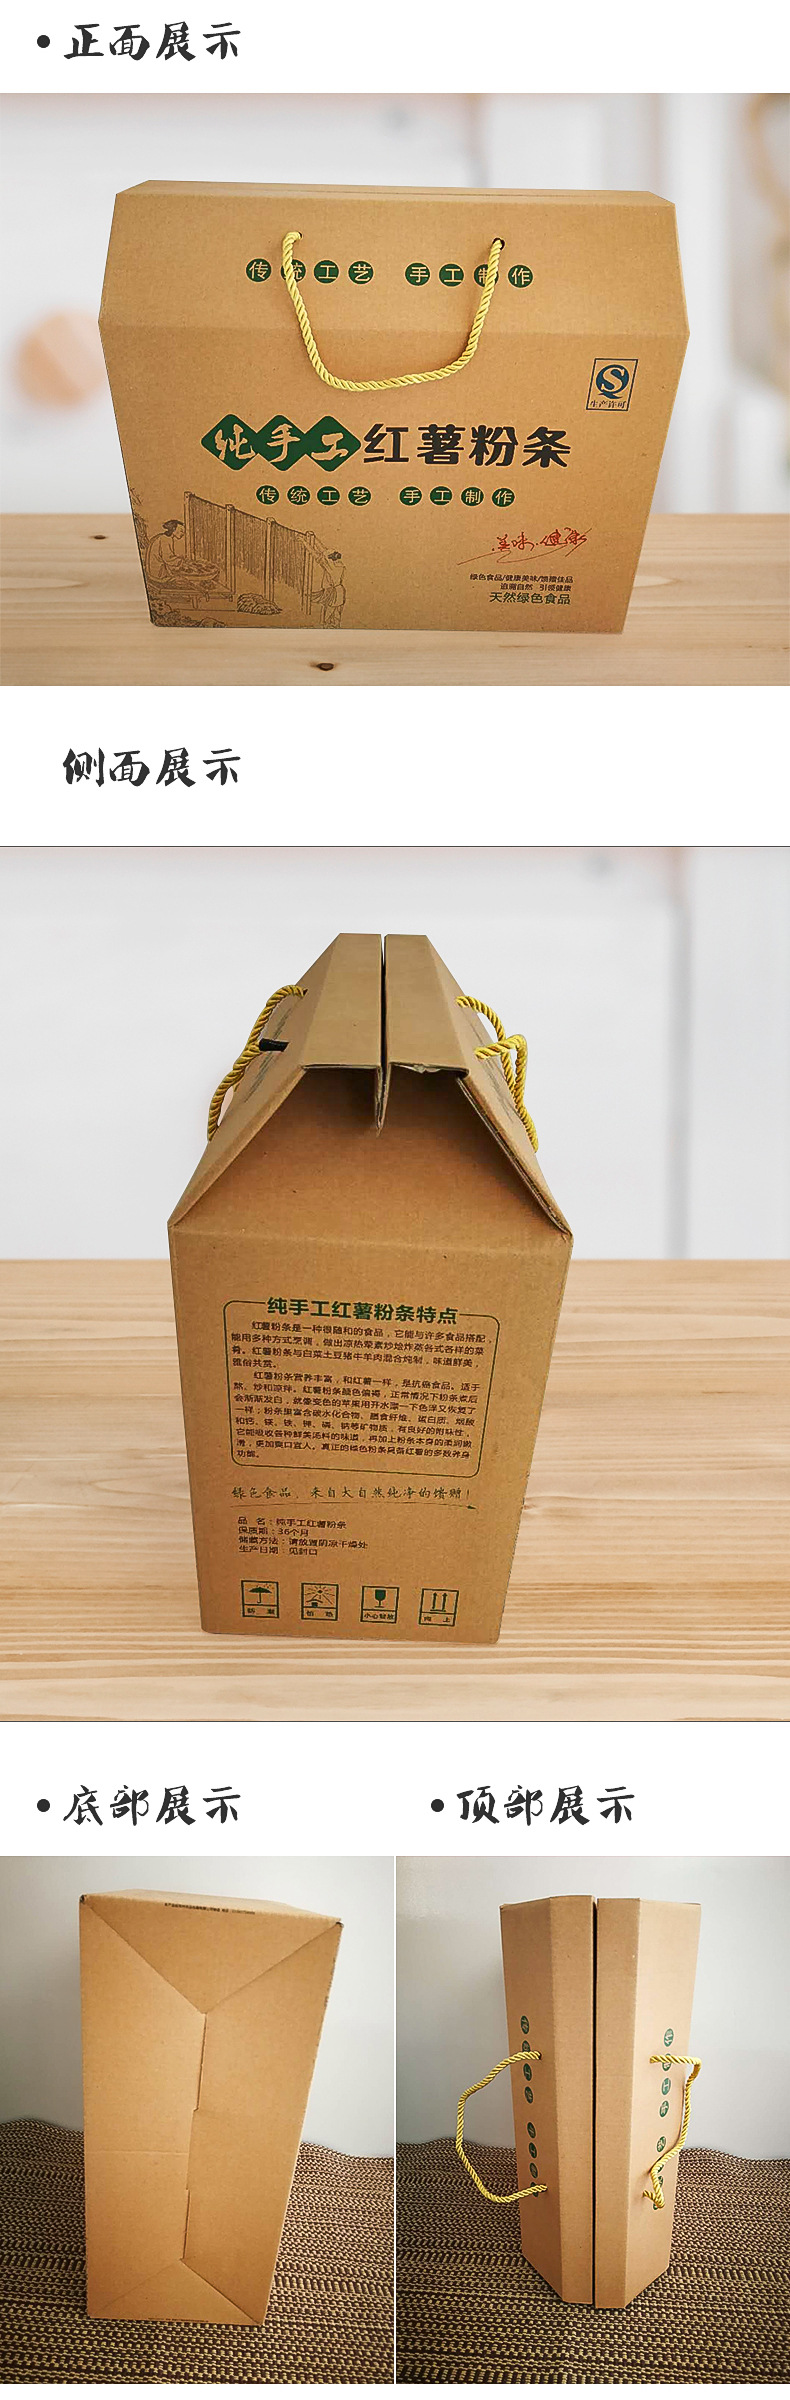 现货厂家定做粉条礼品盒 精美三层 5斤装环保瓦楞红薯粉条包装盒示例图5